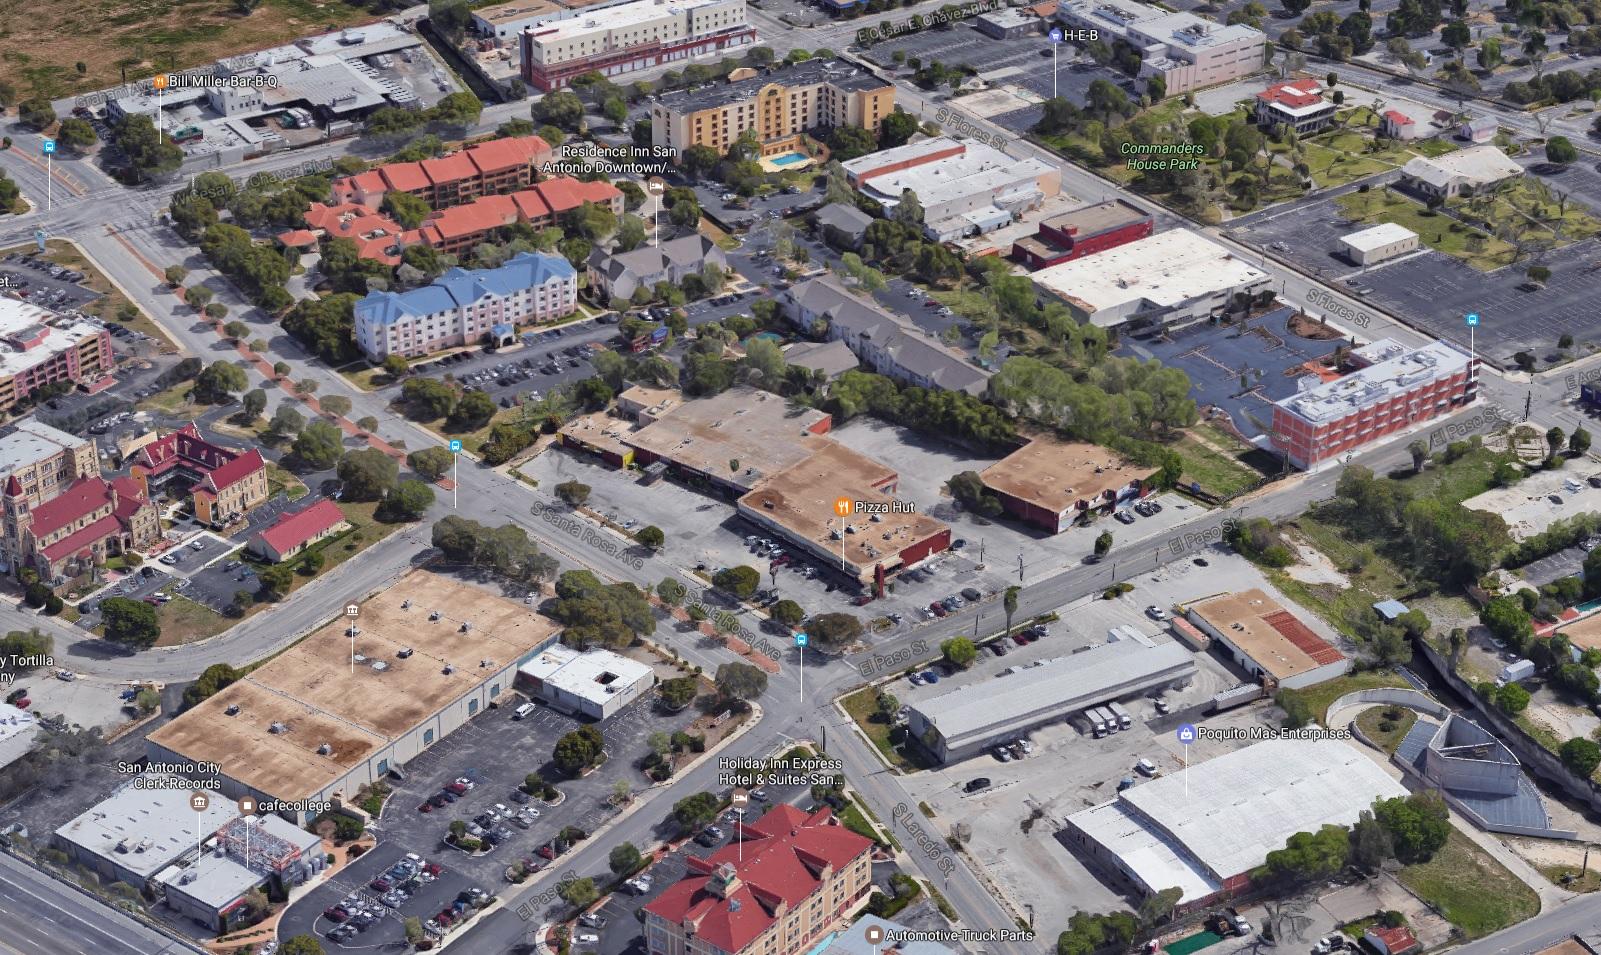 Hixon affiliate buys shopping center in Southtown - San Antonio Express-News1601 x 955